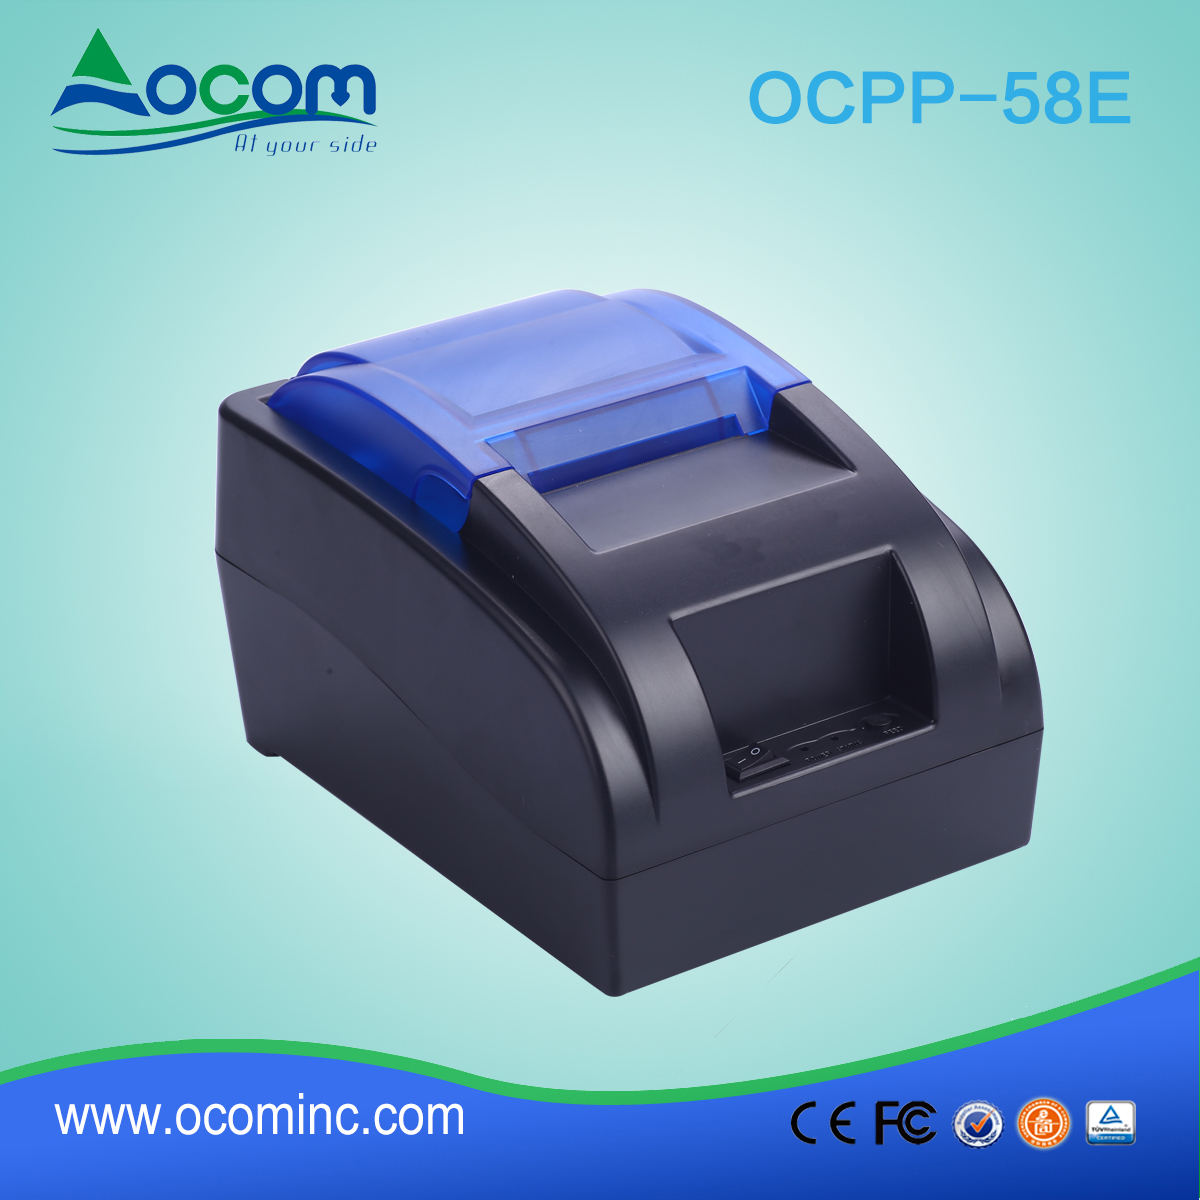 OCPP-58E-China hizo impresora térmica de bajo costo de 58 mm